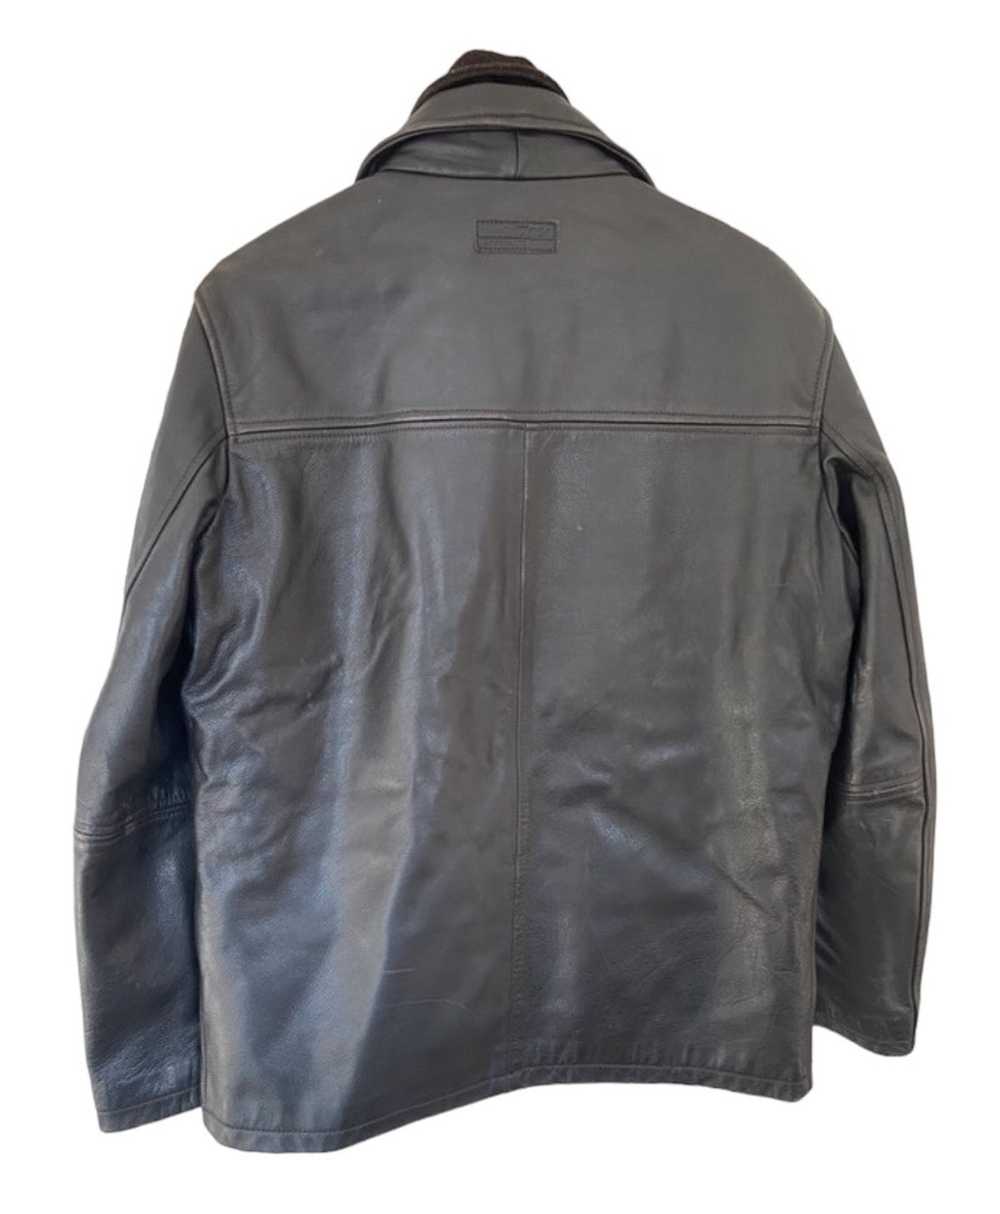 Marlboro Classics Marlboro classic leather jacket - image 2